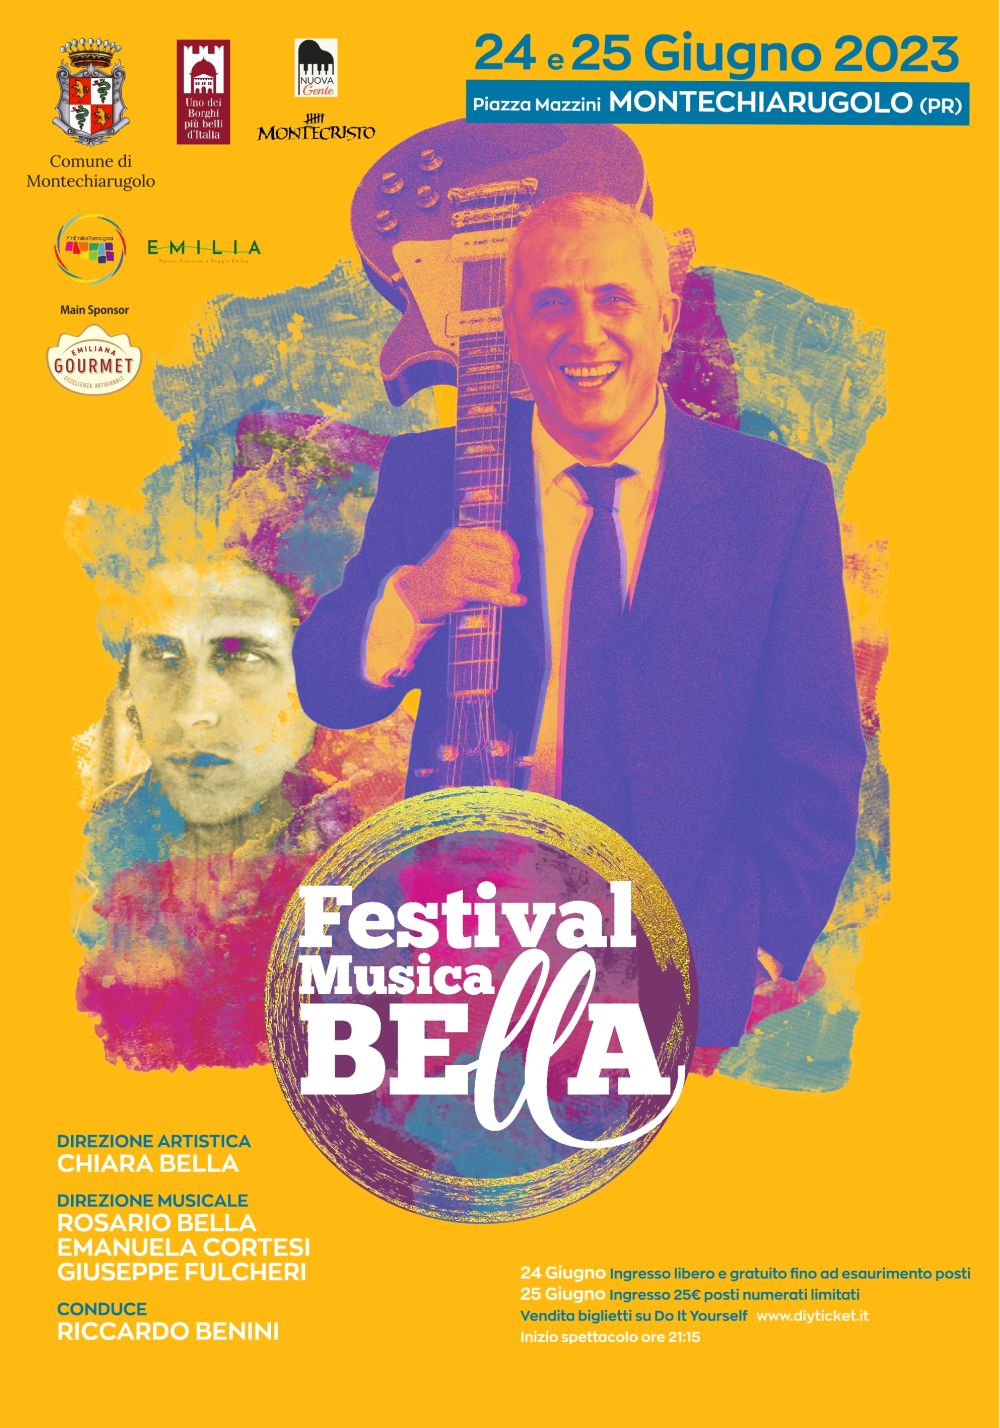 Sabato 24 e domenica 25 giugno in Piazza Mazzini a Montechiarugolo (Parma) si terrà la 1ª edizione del Festival Musica Bella